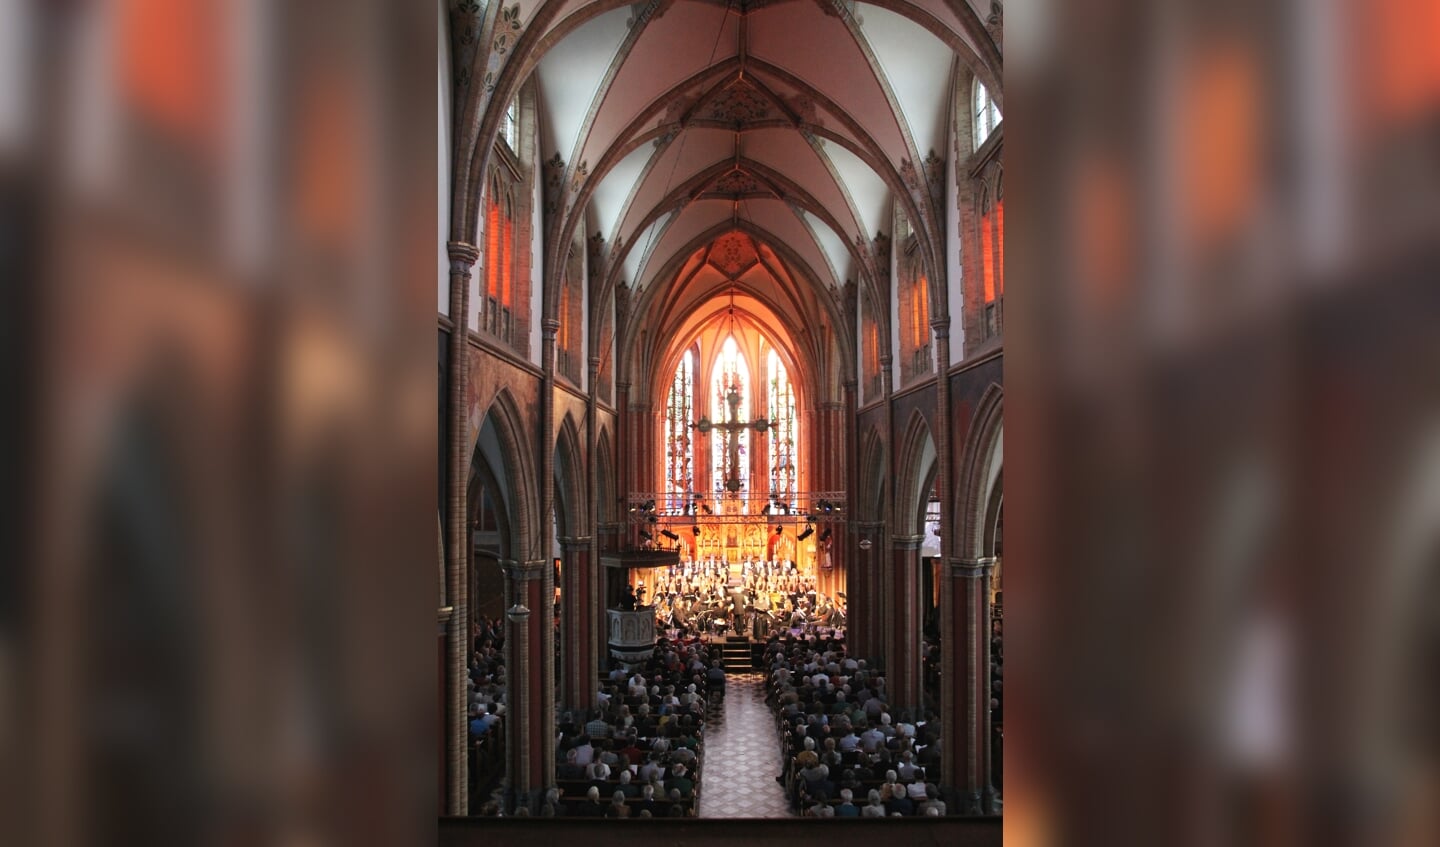 De Werenfriduskerk heeft een perfecte akoestiek voor uitvoering van de Matthäus Passion. Foto: PR